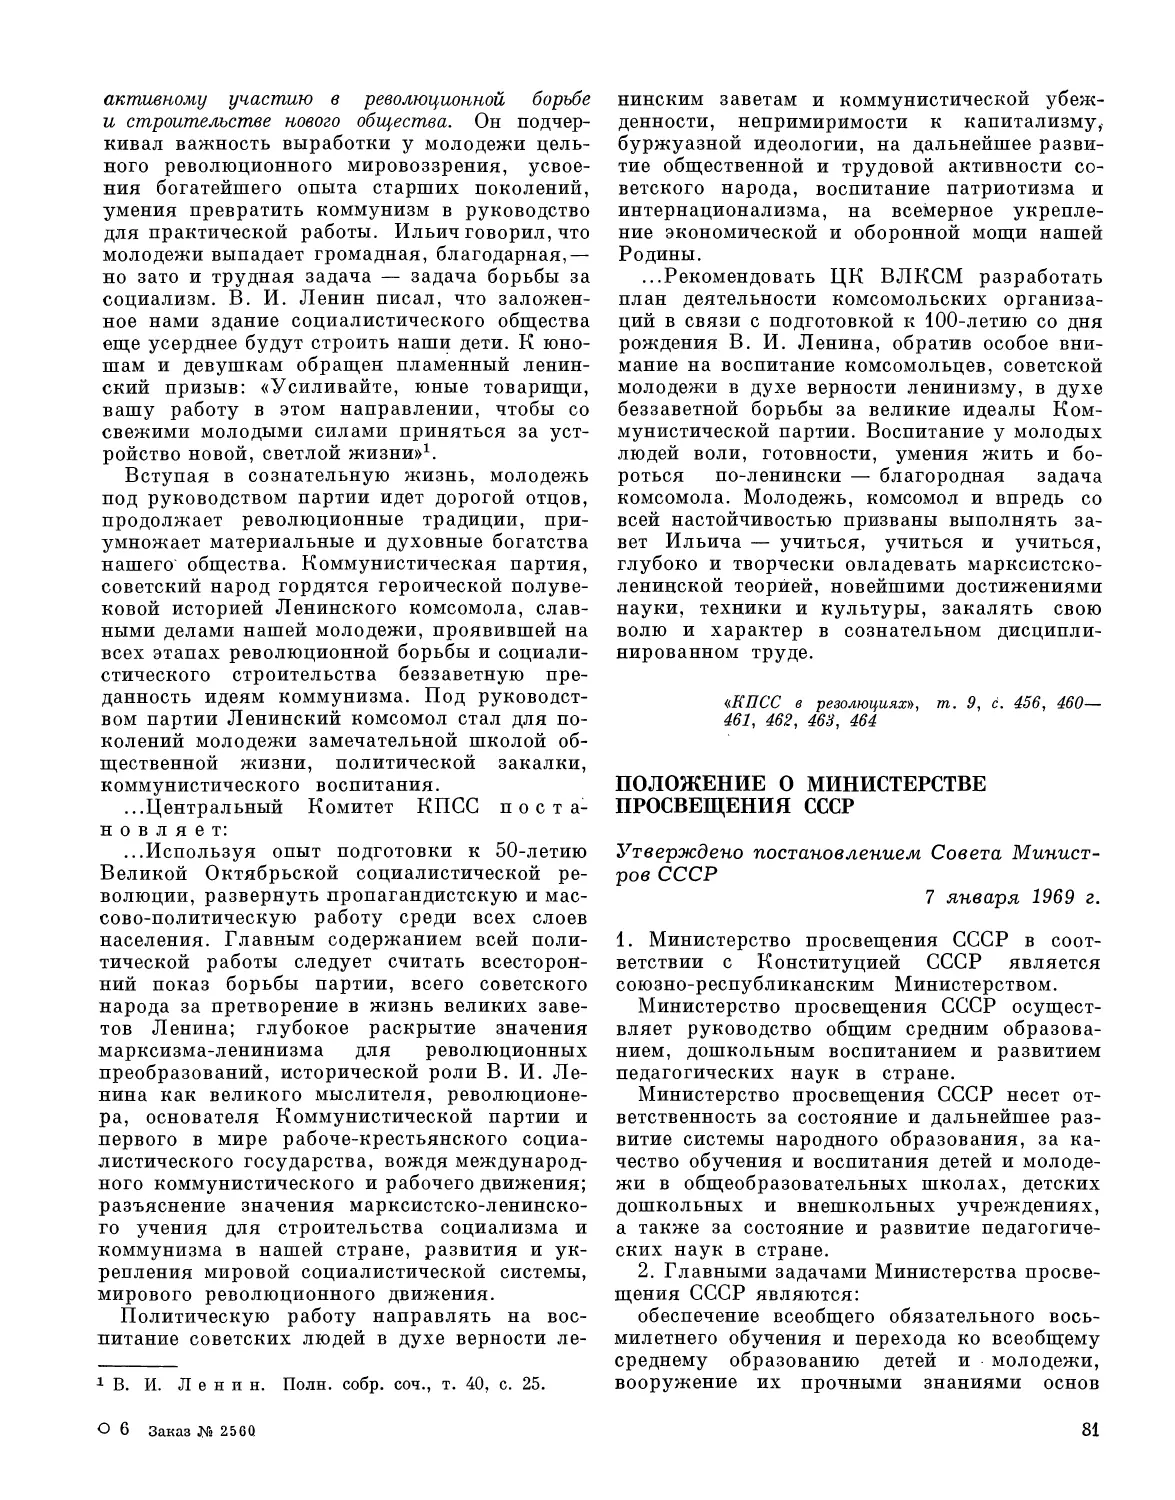 Положение о Министерстве просвещения СССР. Утверждено постановлением Совета Министров СССР 7 января 1969 г